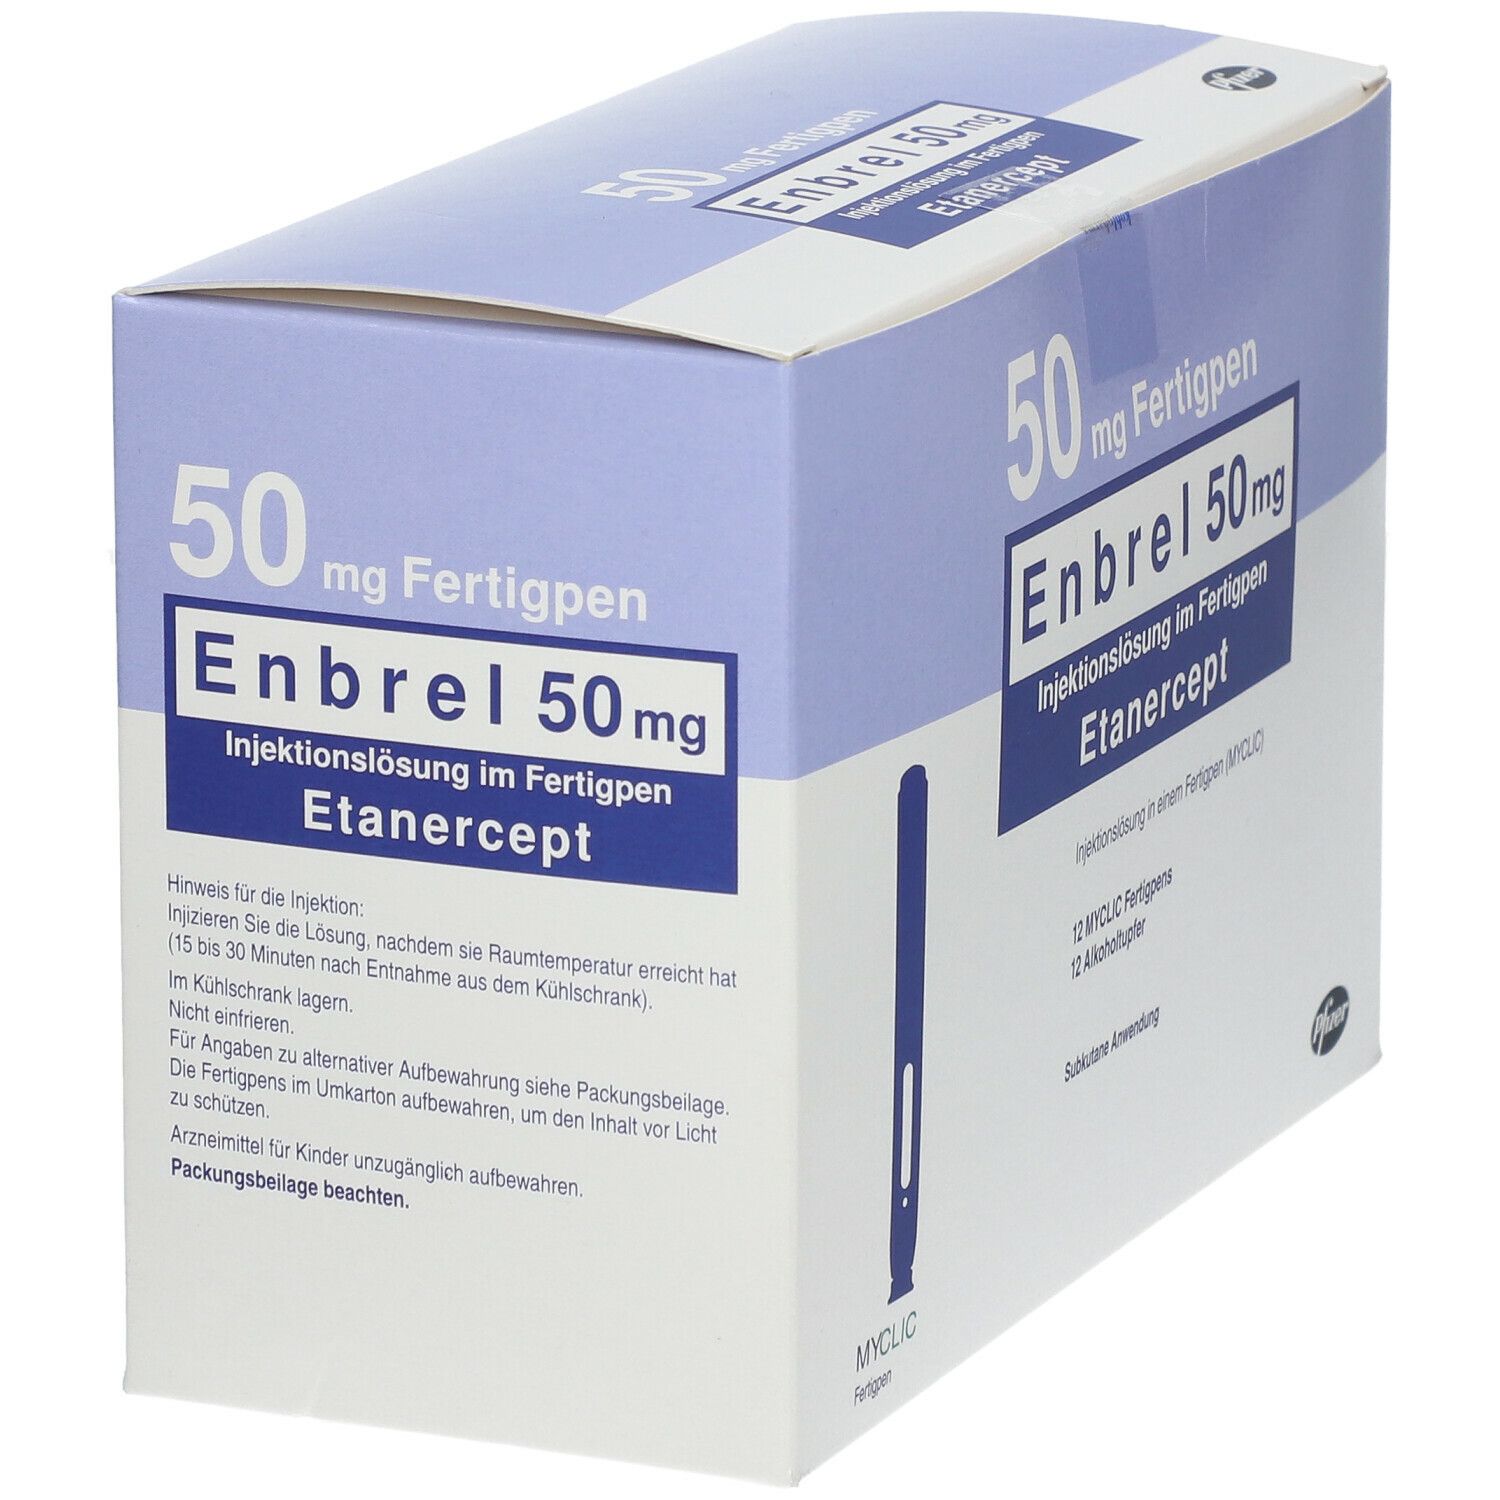 Enbrel 50 mg Myclic